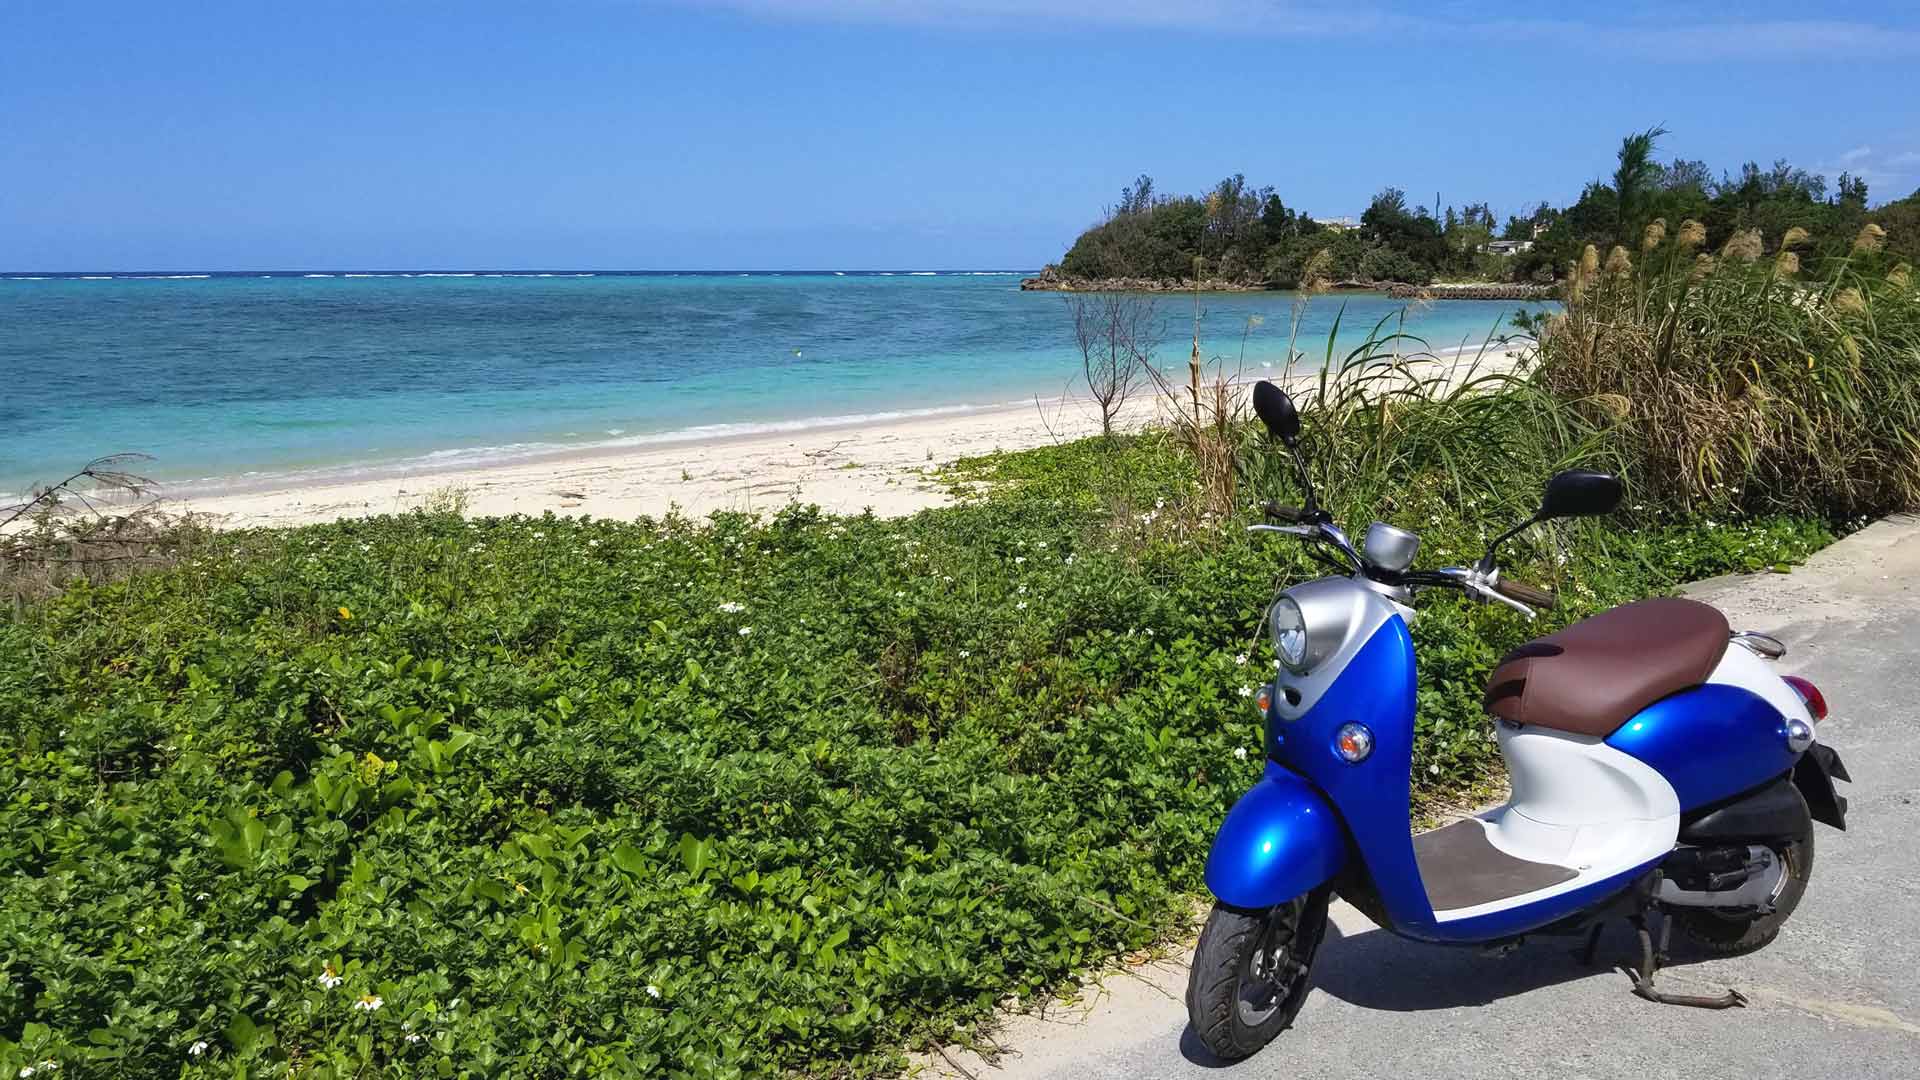 沖縄北部の旅 本部町 今帰仁村 古宇利島をレンタルバイクでめぐっ